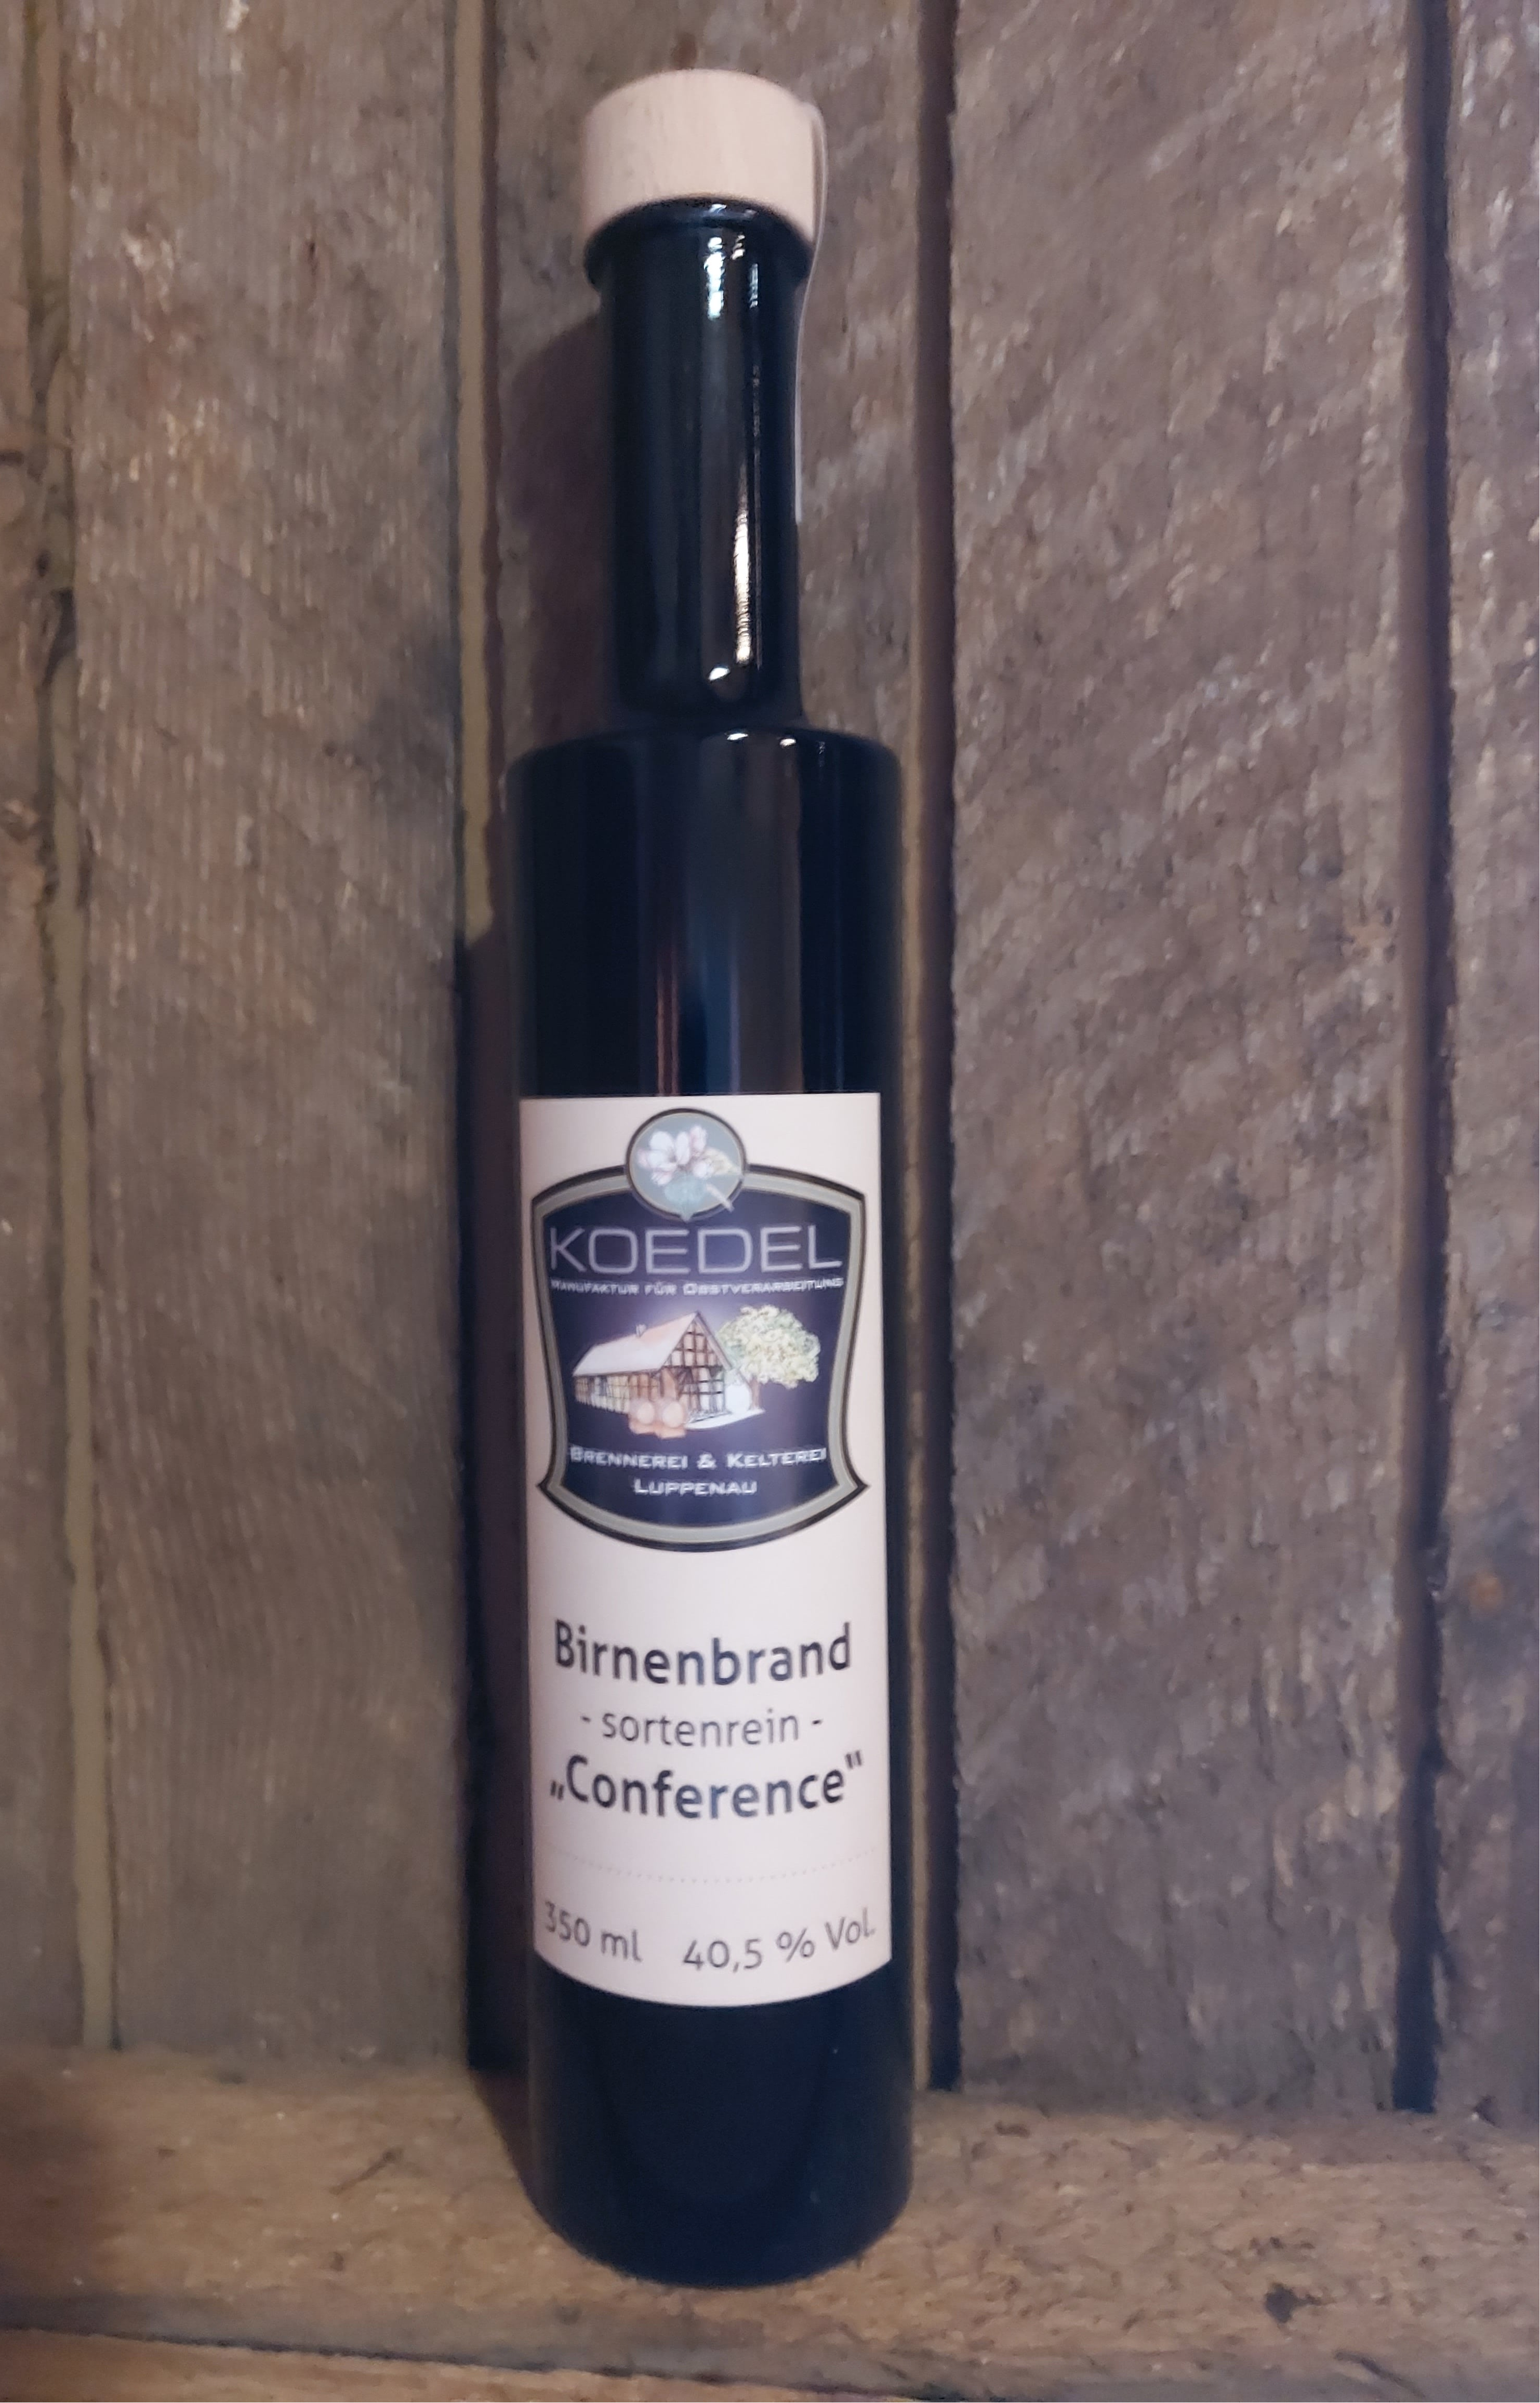 Birnenbrand, sortenrein "Conference"  350 ml